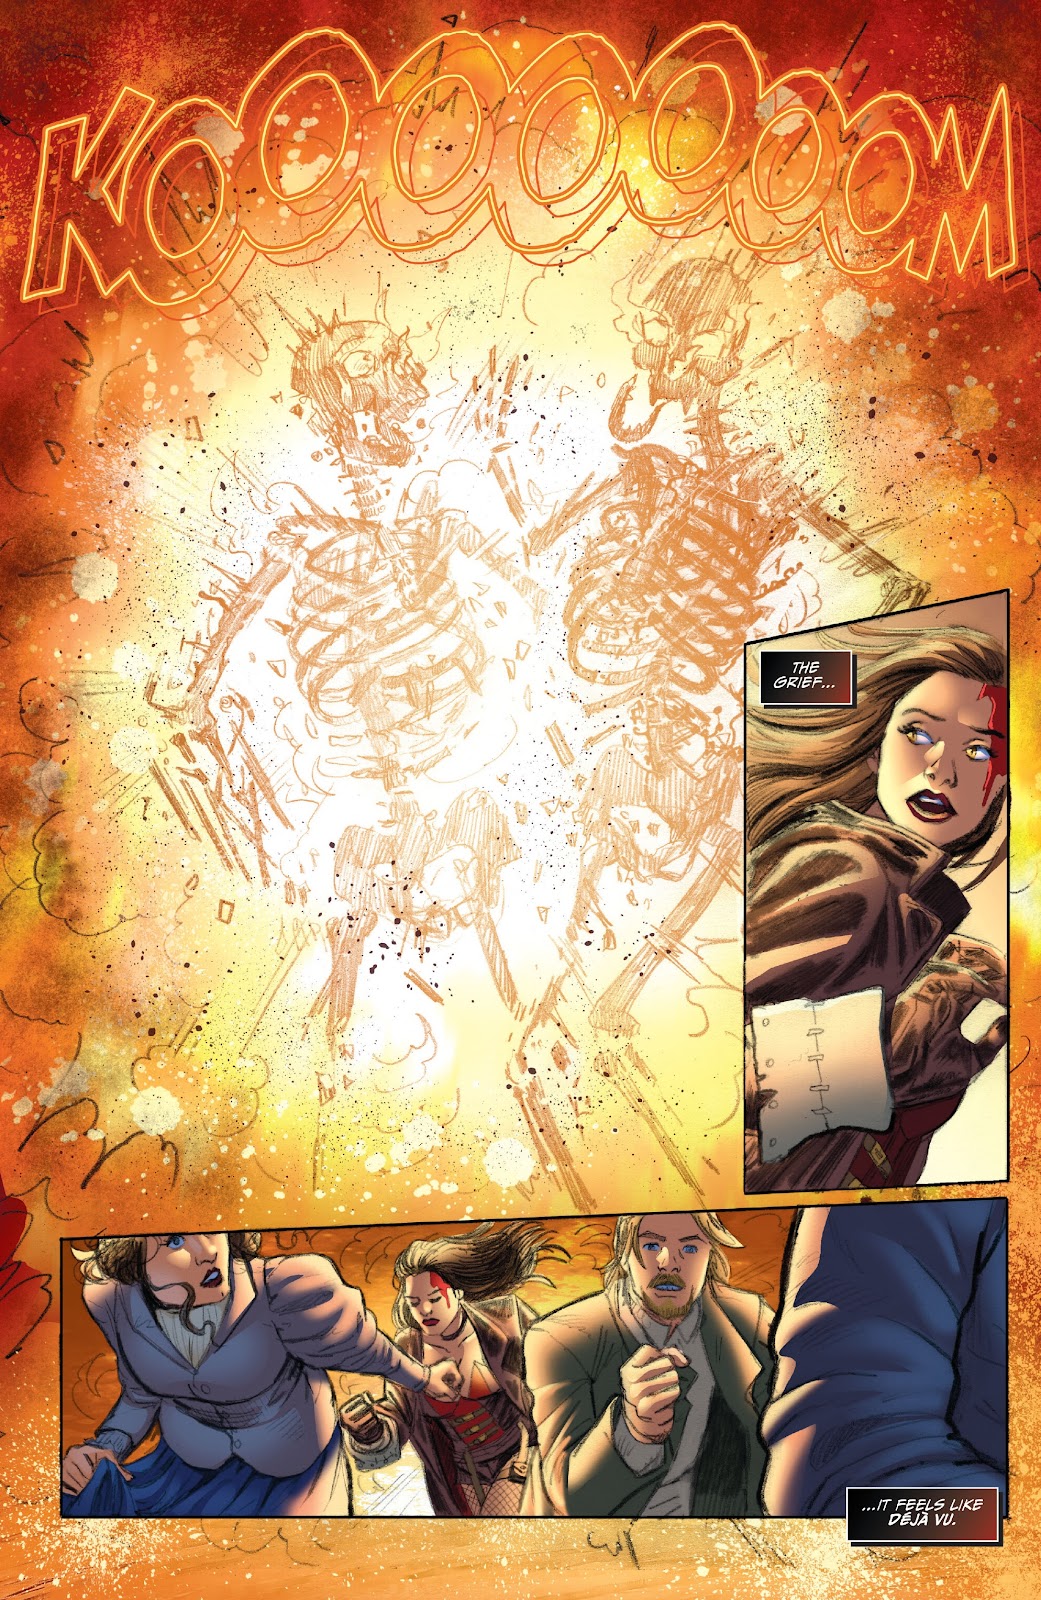 Van Helsing: Vampire Hunter issue 3 - Page 12